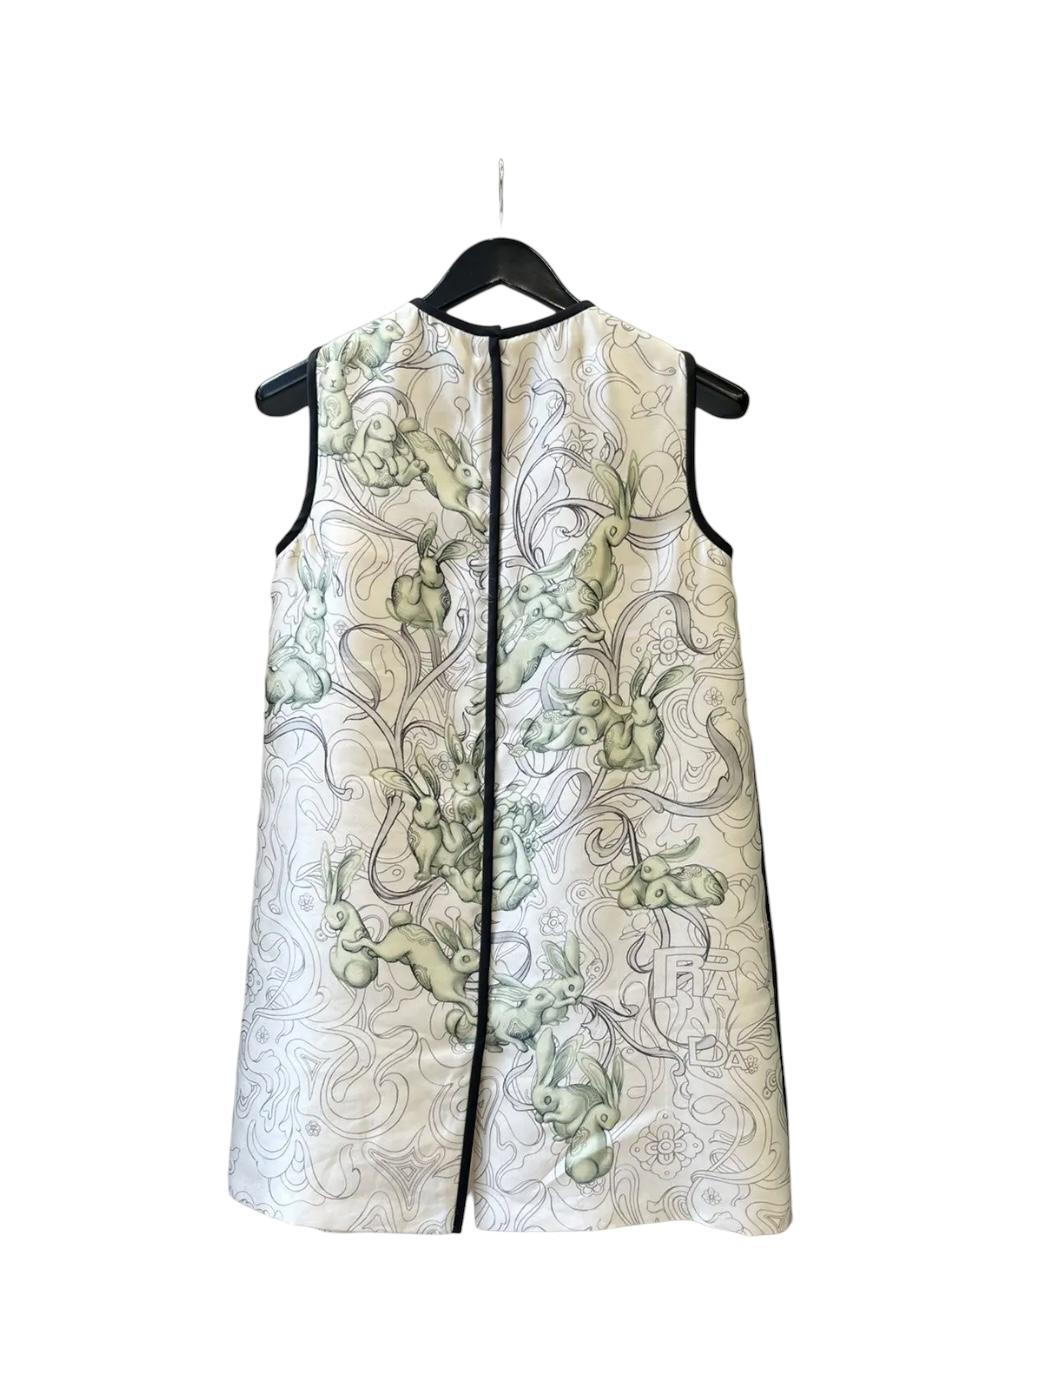 Prada
2017 Rabbit A-Line Silk Dress
Taille IT 42

Magnifique robe en soie a-line lapin Prada 2017 en taille IT 42. En très bon état, sans défaut, fabriqué en Italie.